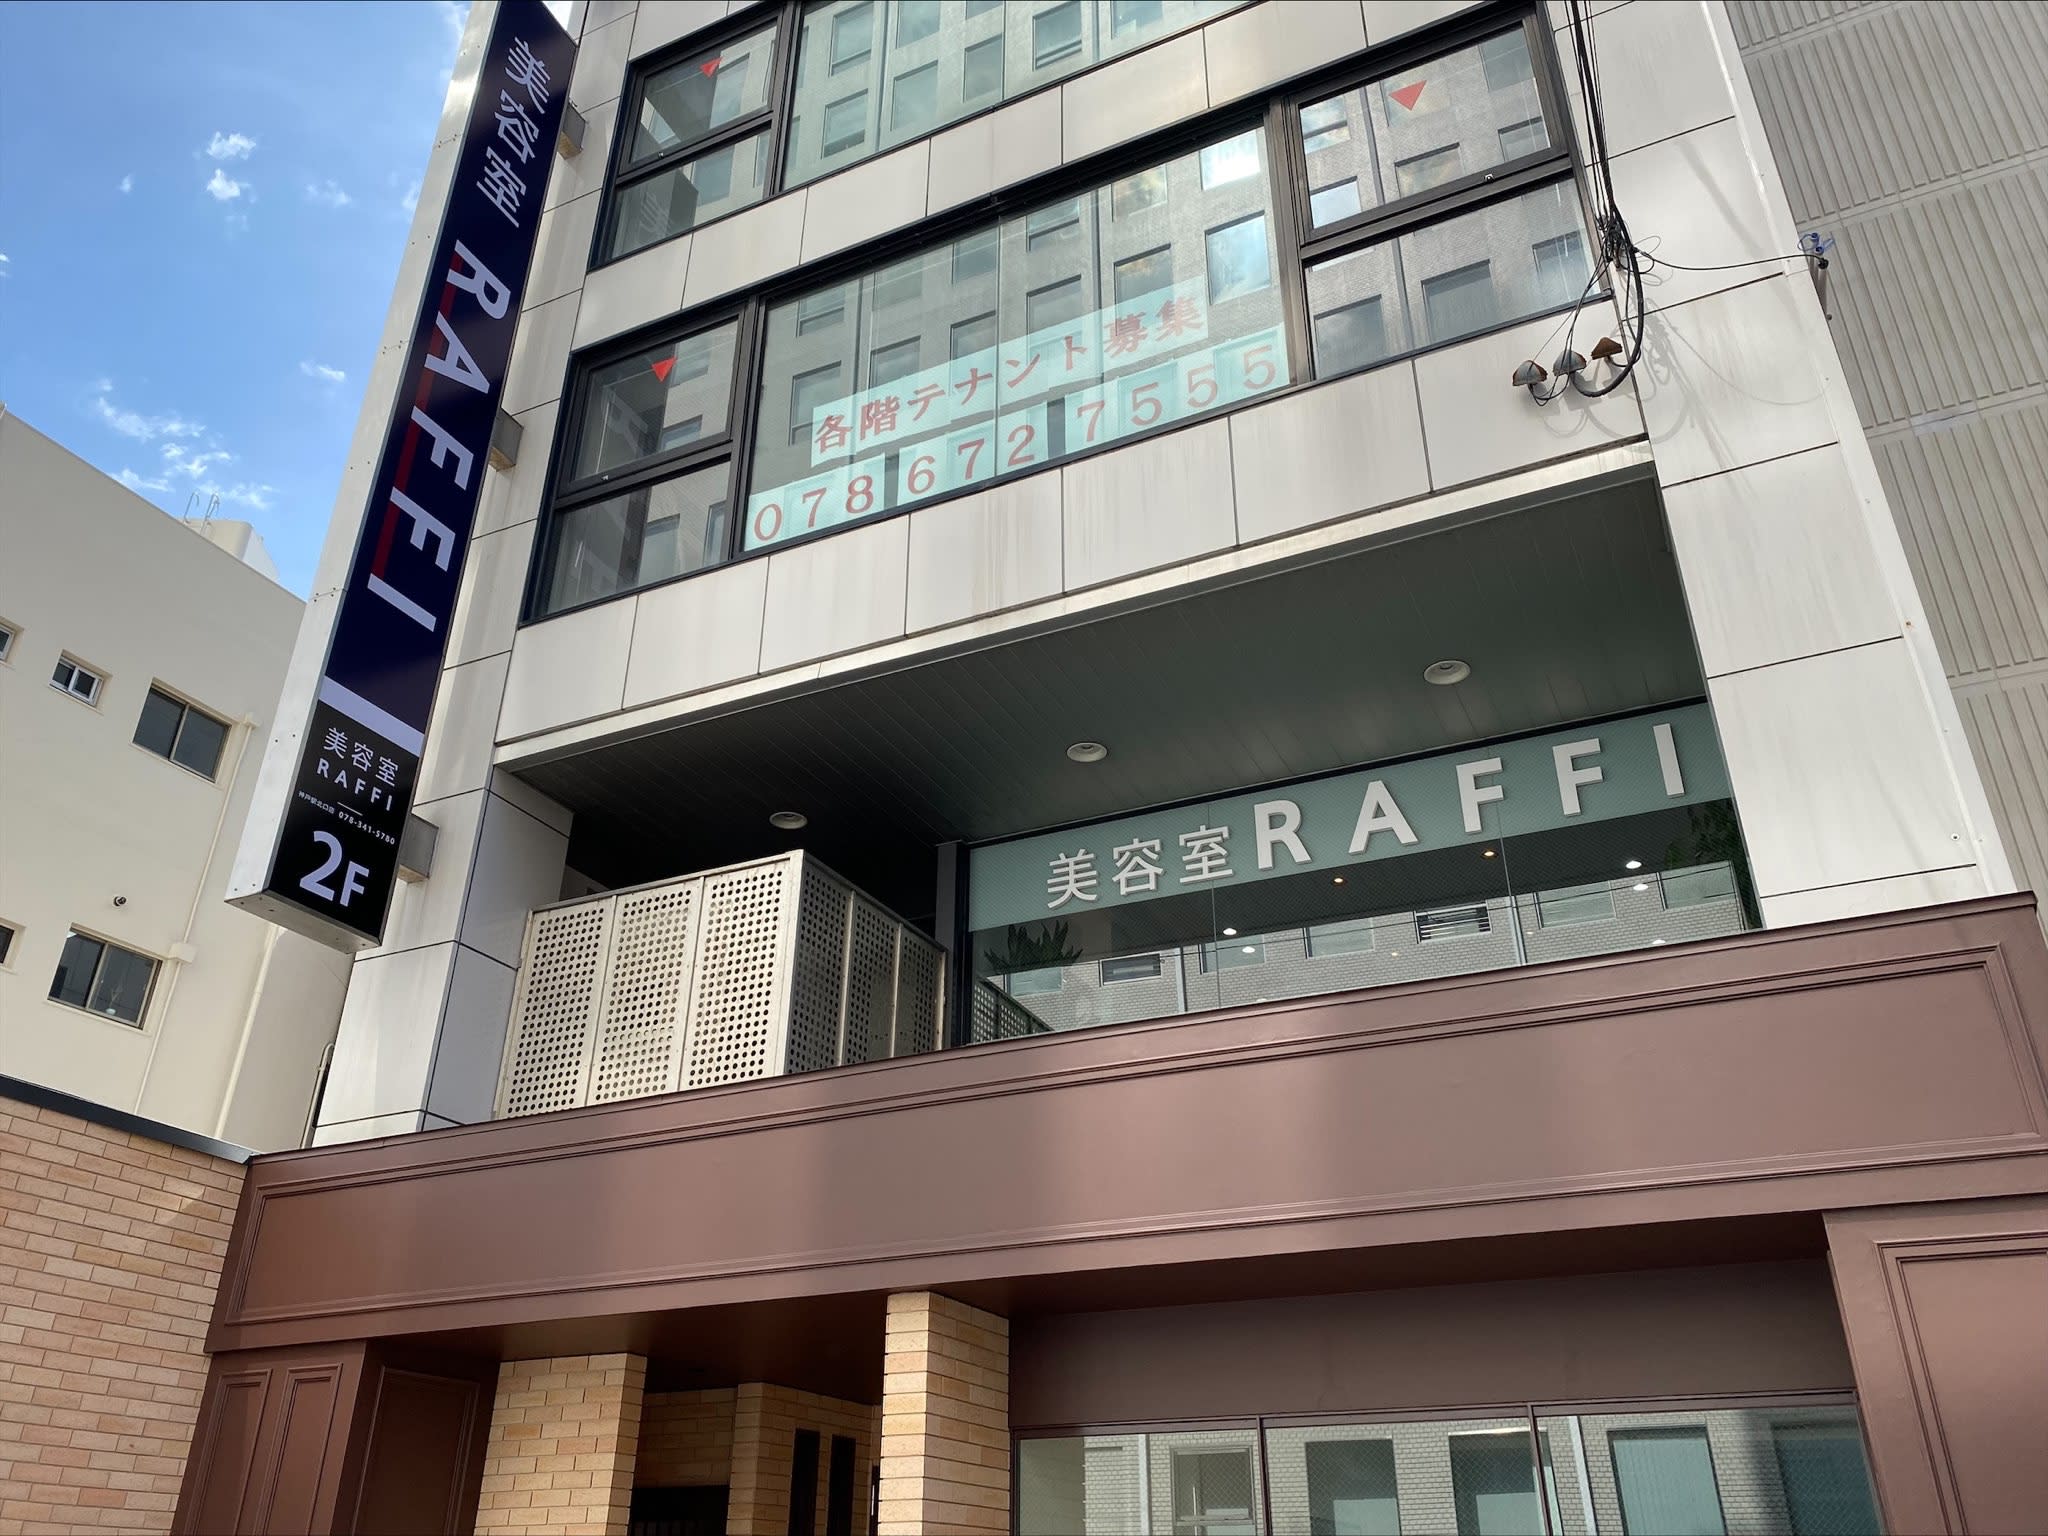 RAFFI 神戸駅北口店のアイキャッチ画像